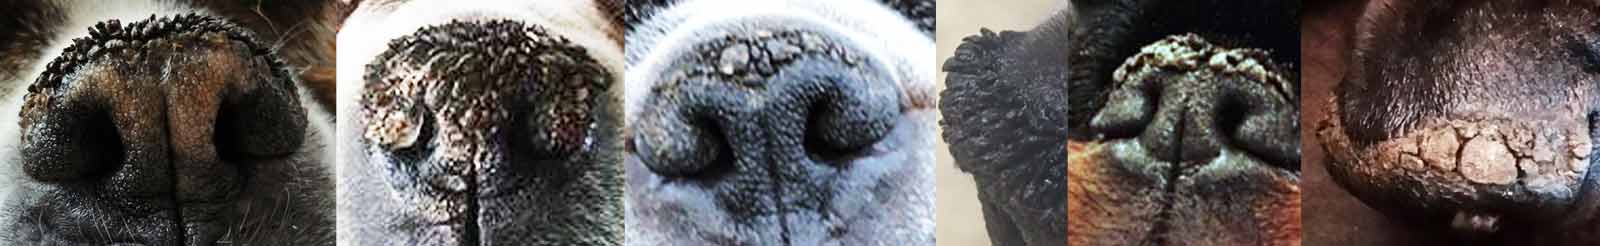 Nasal hyperkeratosis dog noses